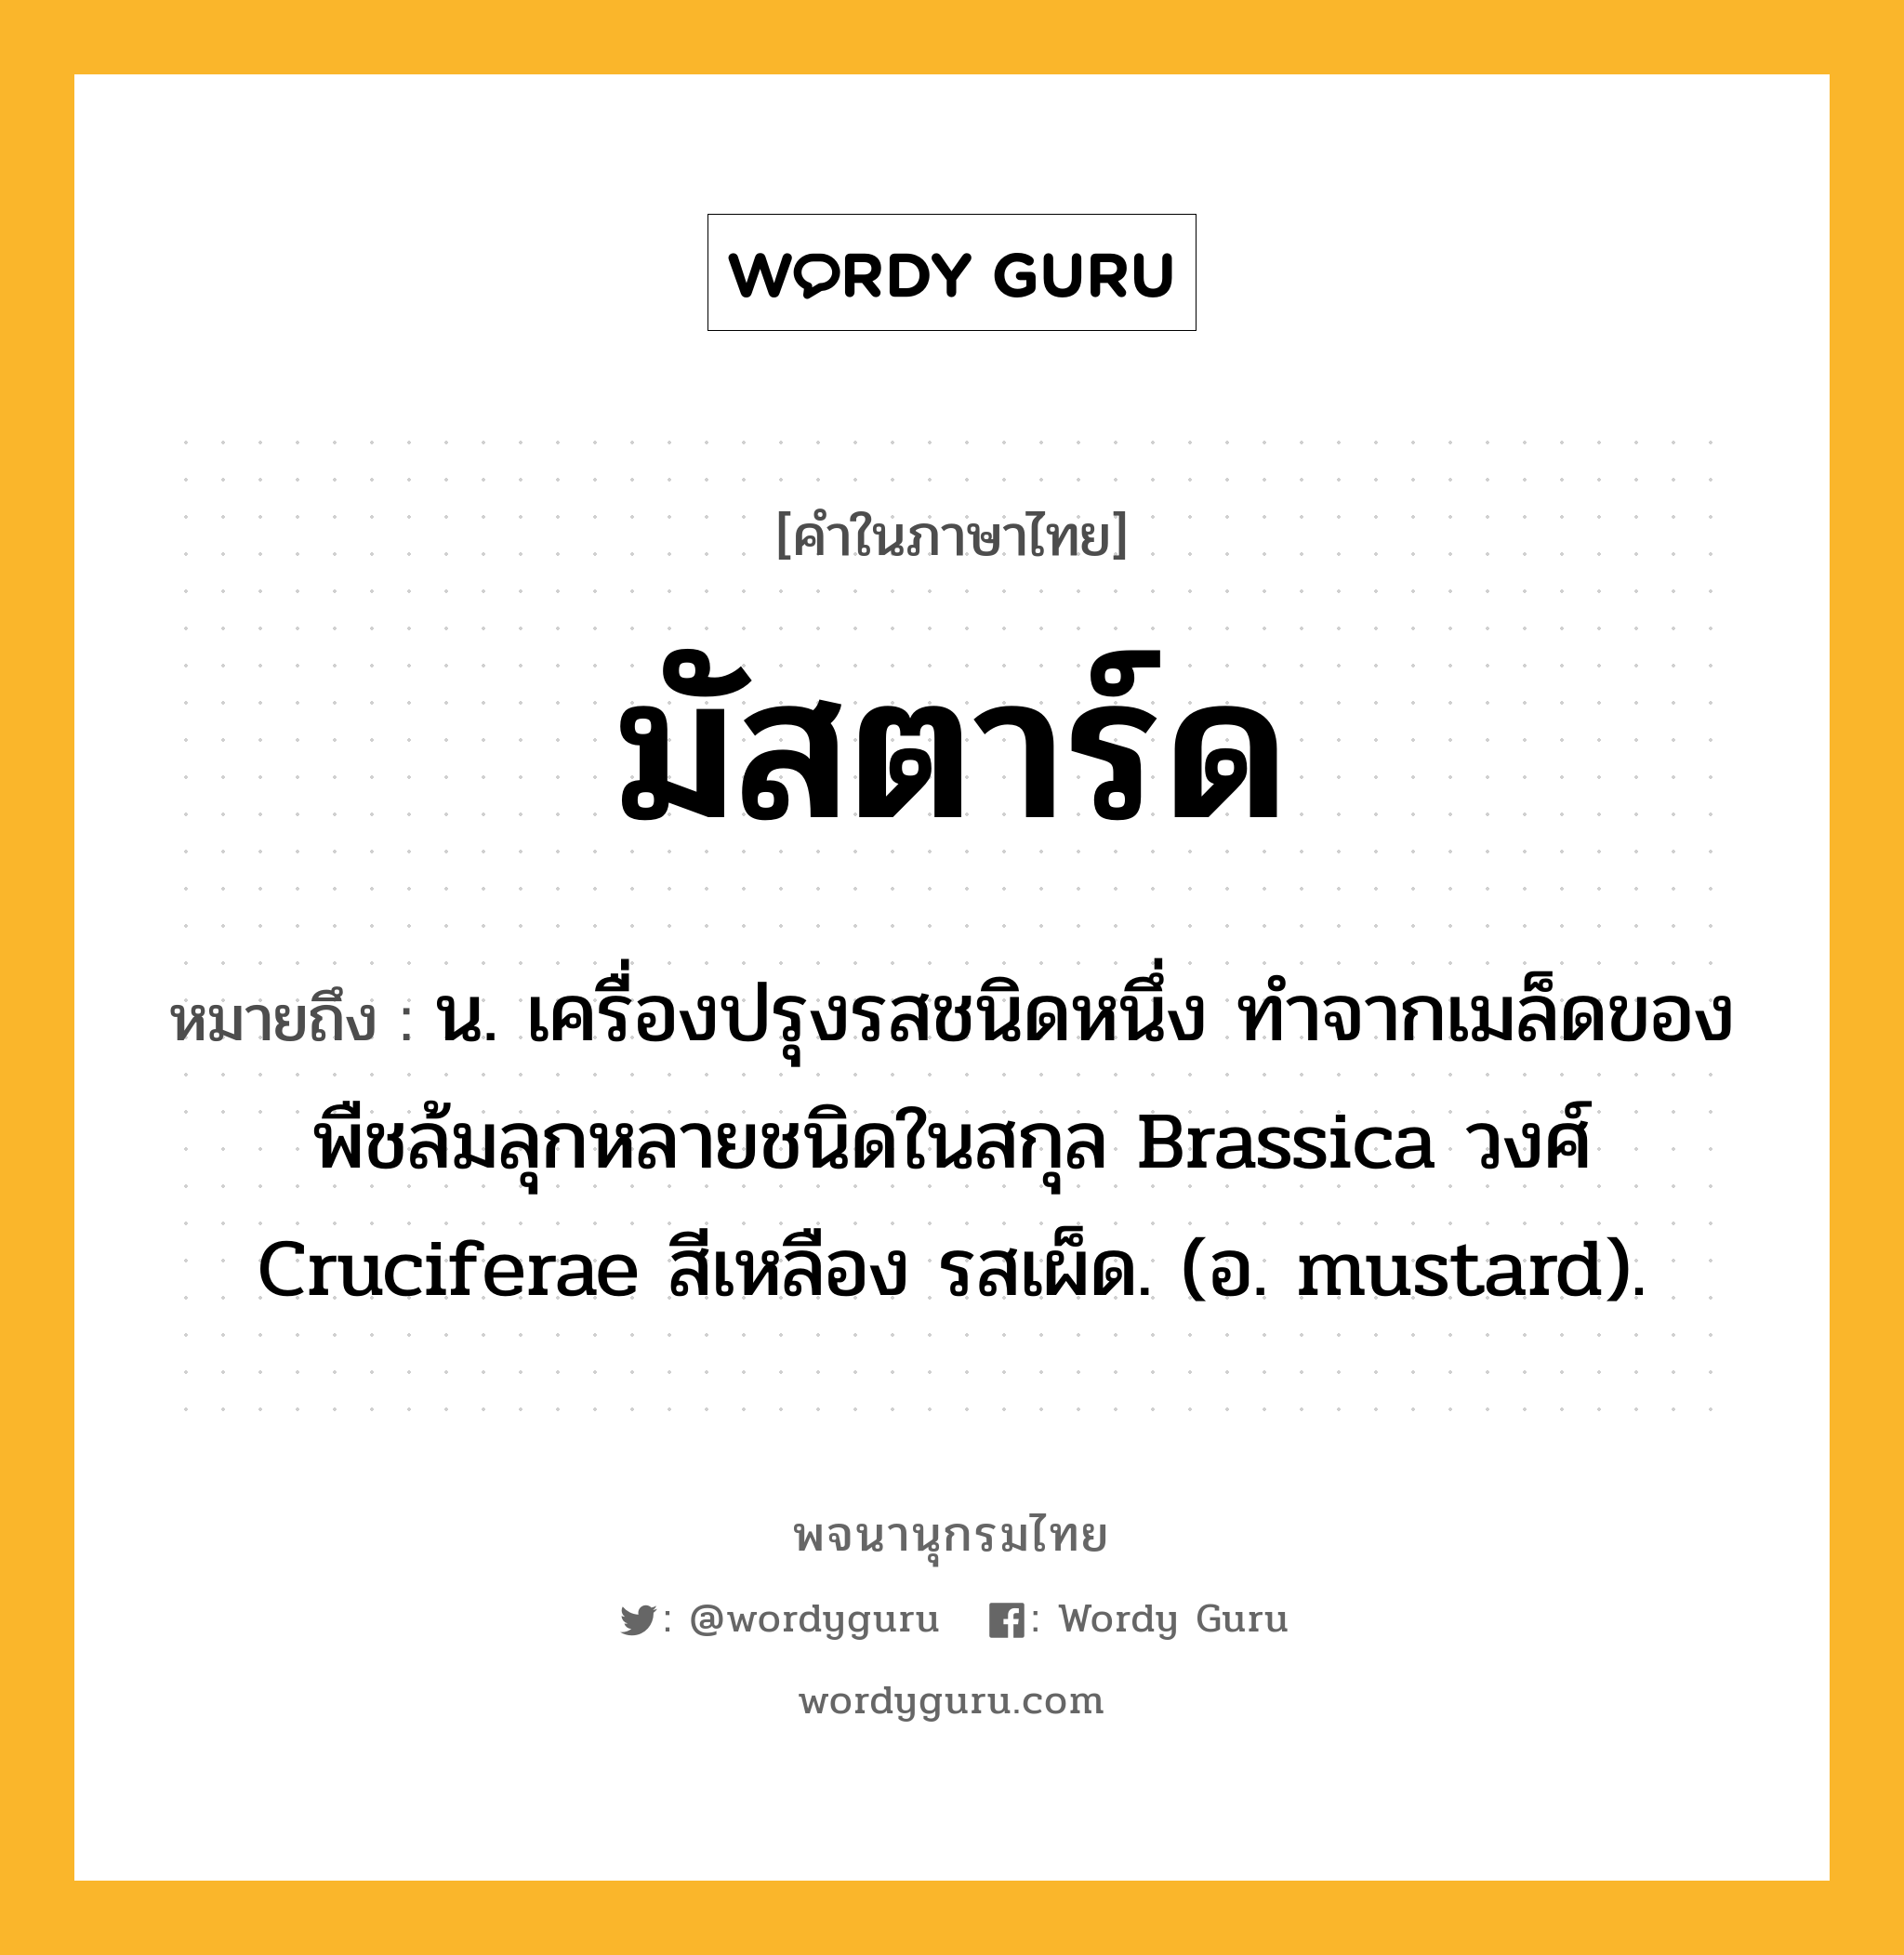 มัสตาร์ด หมายถึงอะไร?, คำในภาษาไทย มัสตาร์ด หมายถึง น. เครื่องปรุงรสชนิดหนึ่ง ทําจากเมล็ดของพืชล้มลุกหลายชนิดในสกุล Brassica วงศ์ Cruciferae สีเหลือง รสเผ็ด. (อ. mustard).